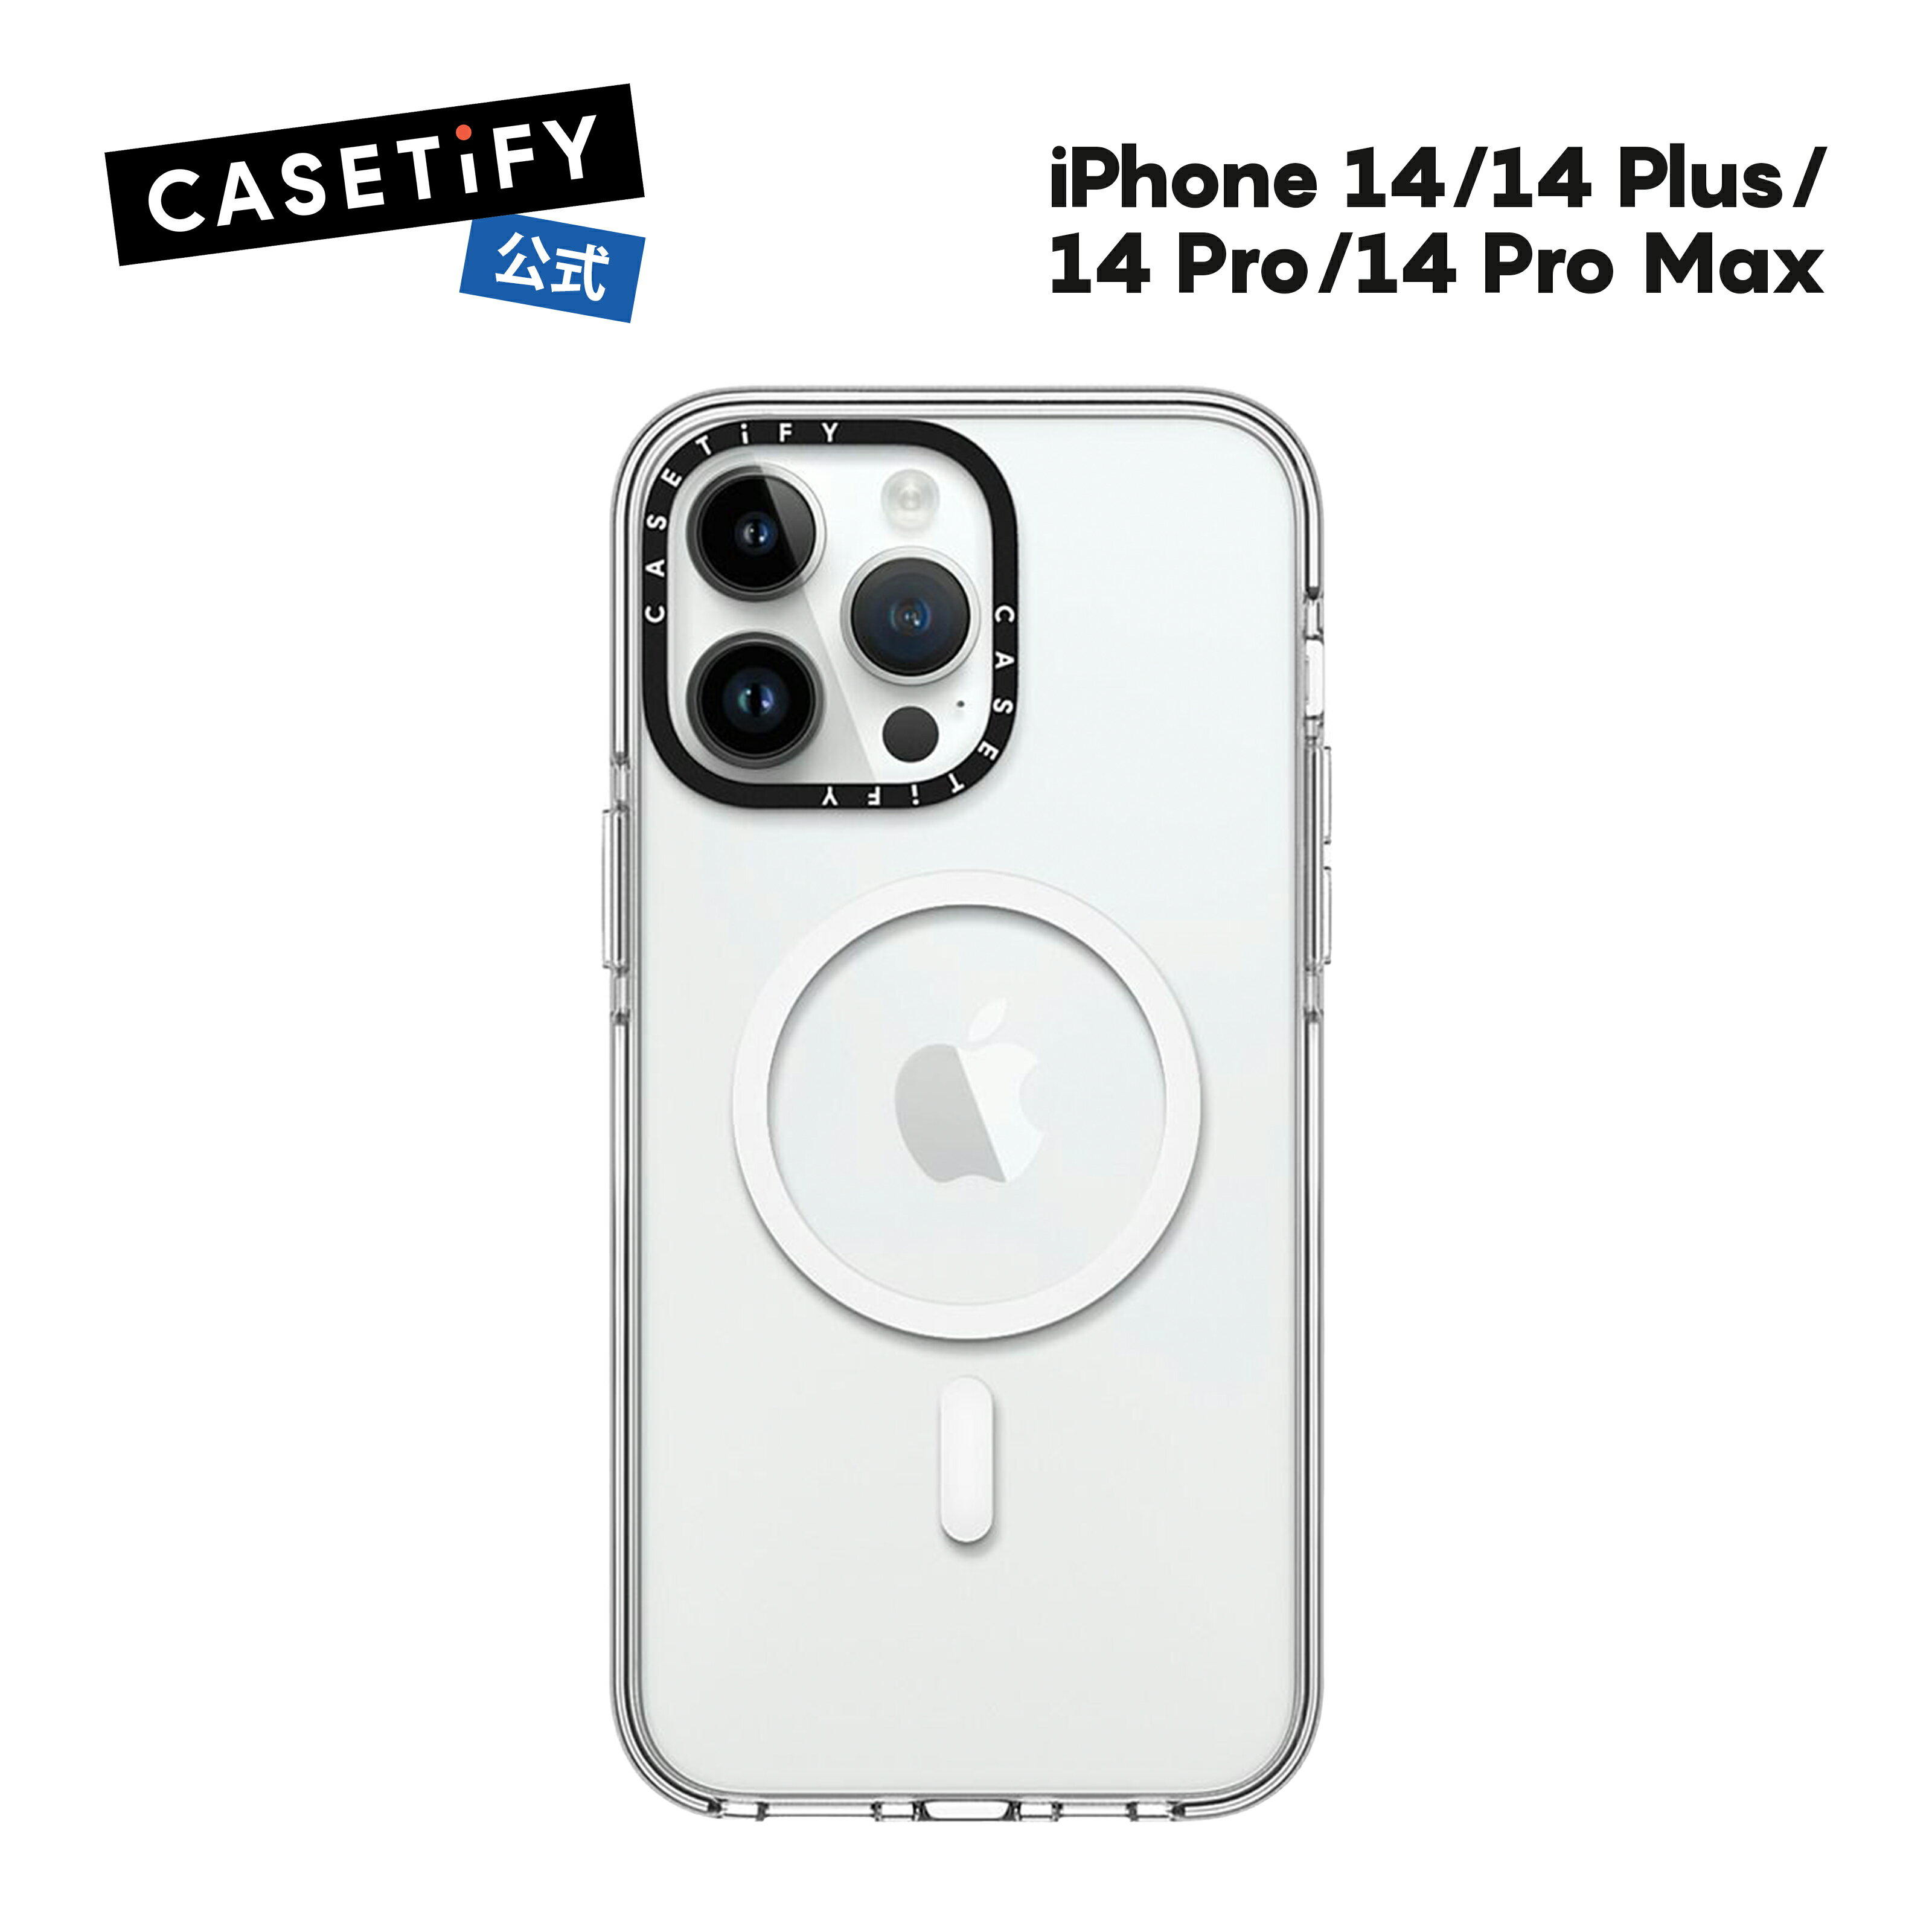 【公式】CASETiFY iPhone14 iPhone 14Pro iPhone 14Pro Max iPhone 14Plus Clear Case Magsafe 対応 エッセンシャルケース 耐衝撃 保護ケース 透明 ワイヤレス充電に対応 MagSafe 対応